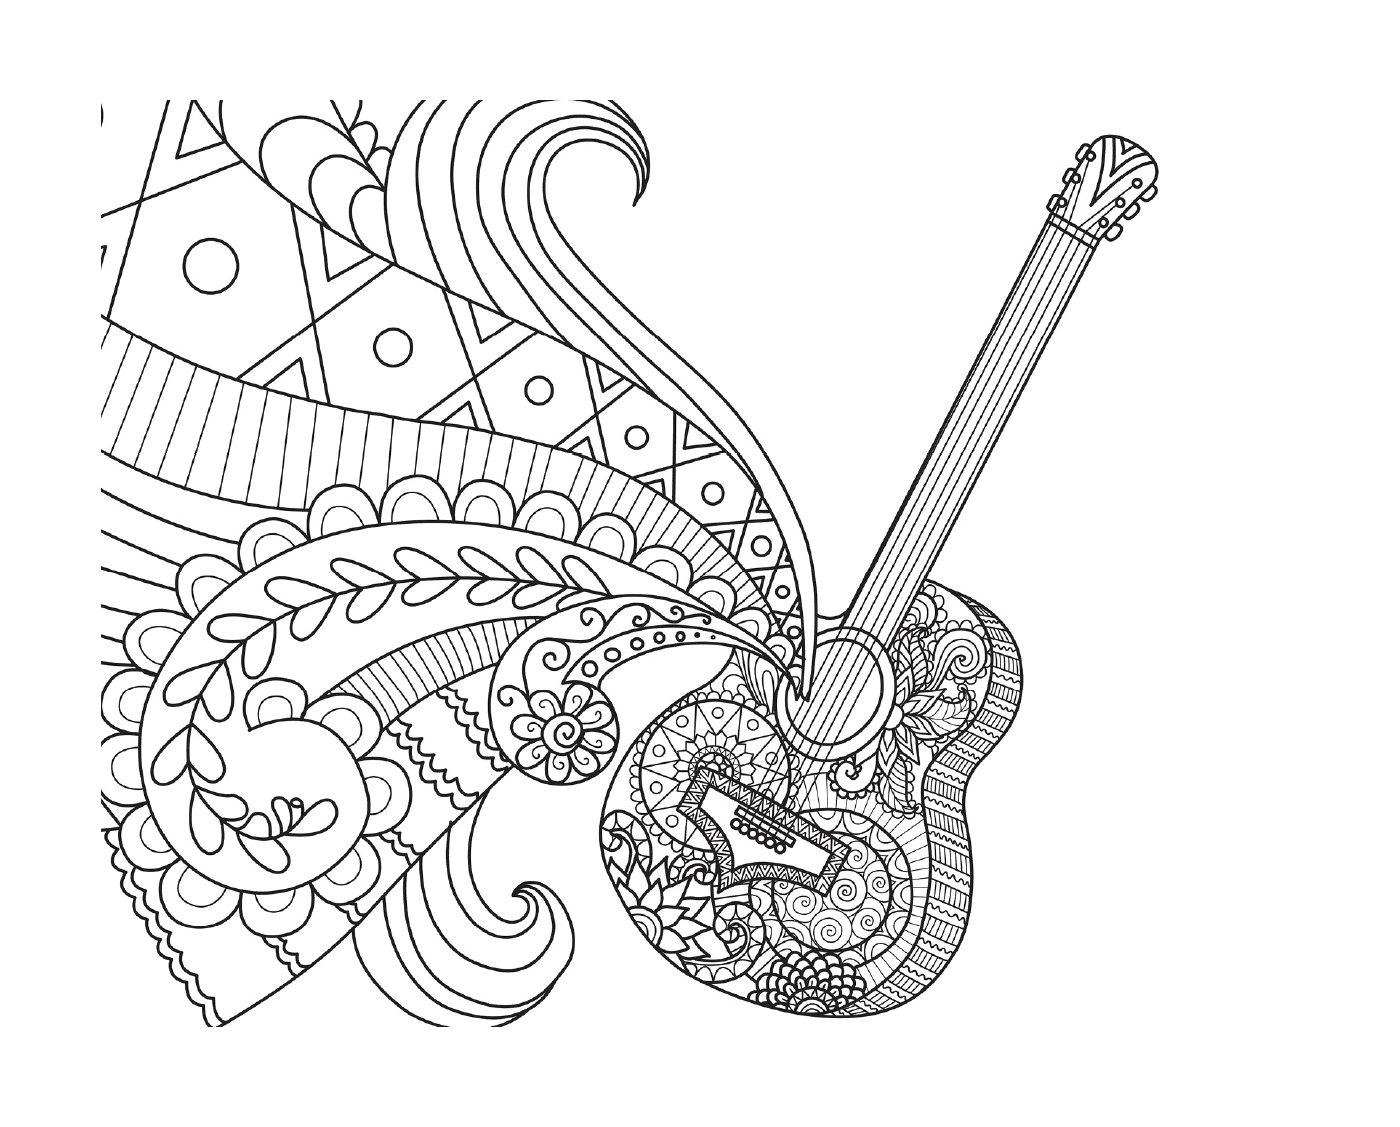 coco disney guitare de miguel par bimbimkha